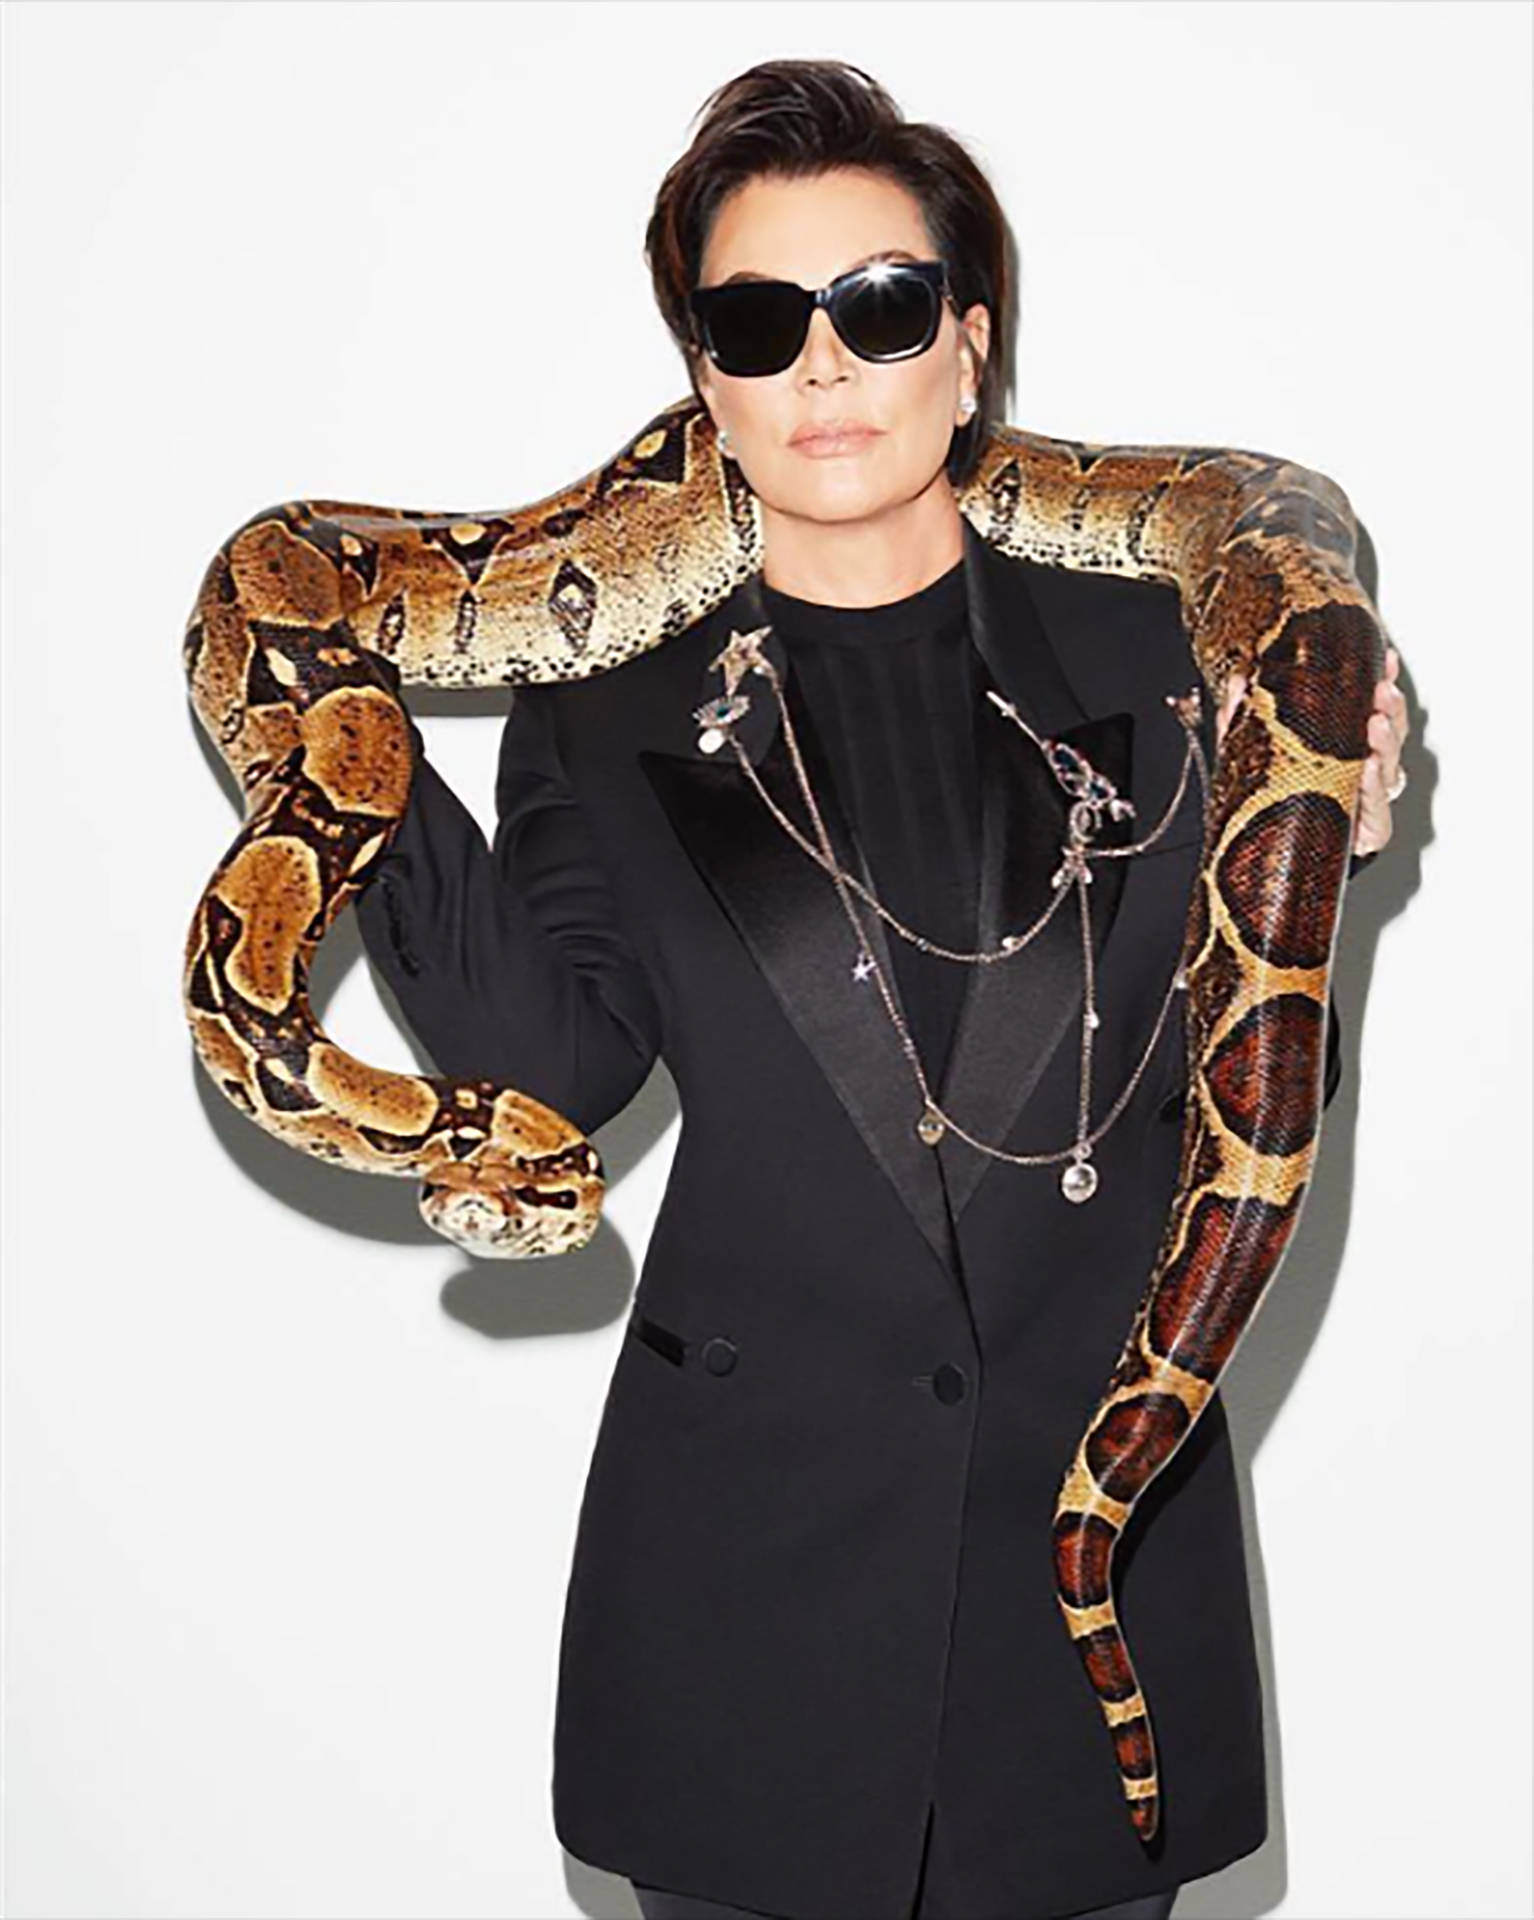 Kris Jenner With Snake Wallpaper